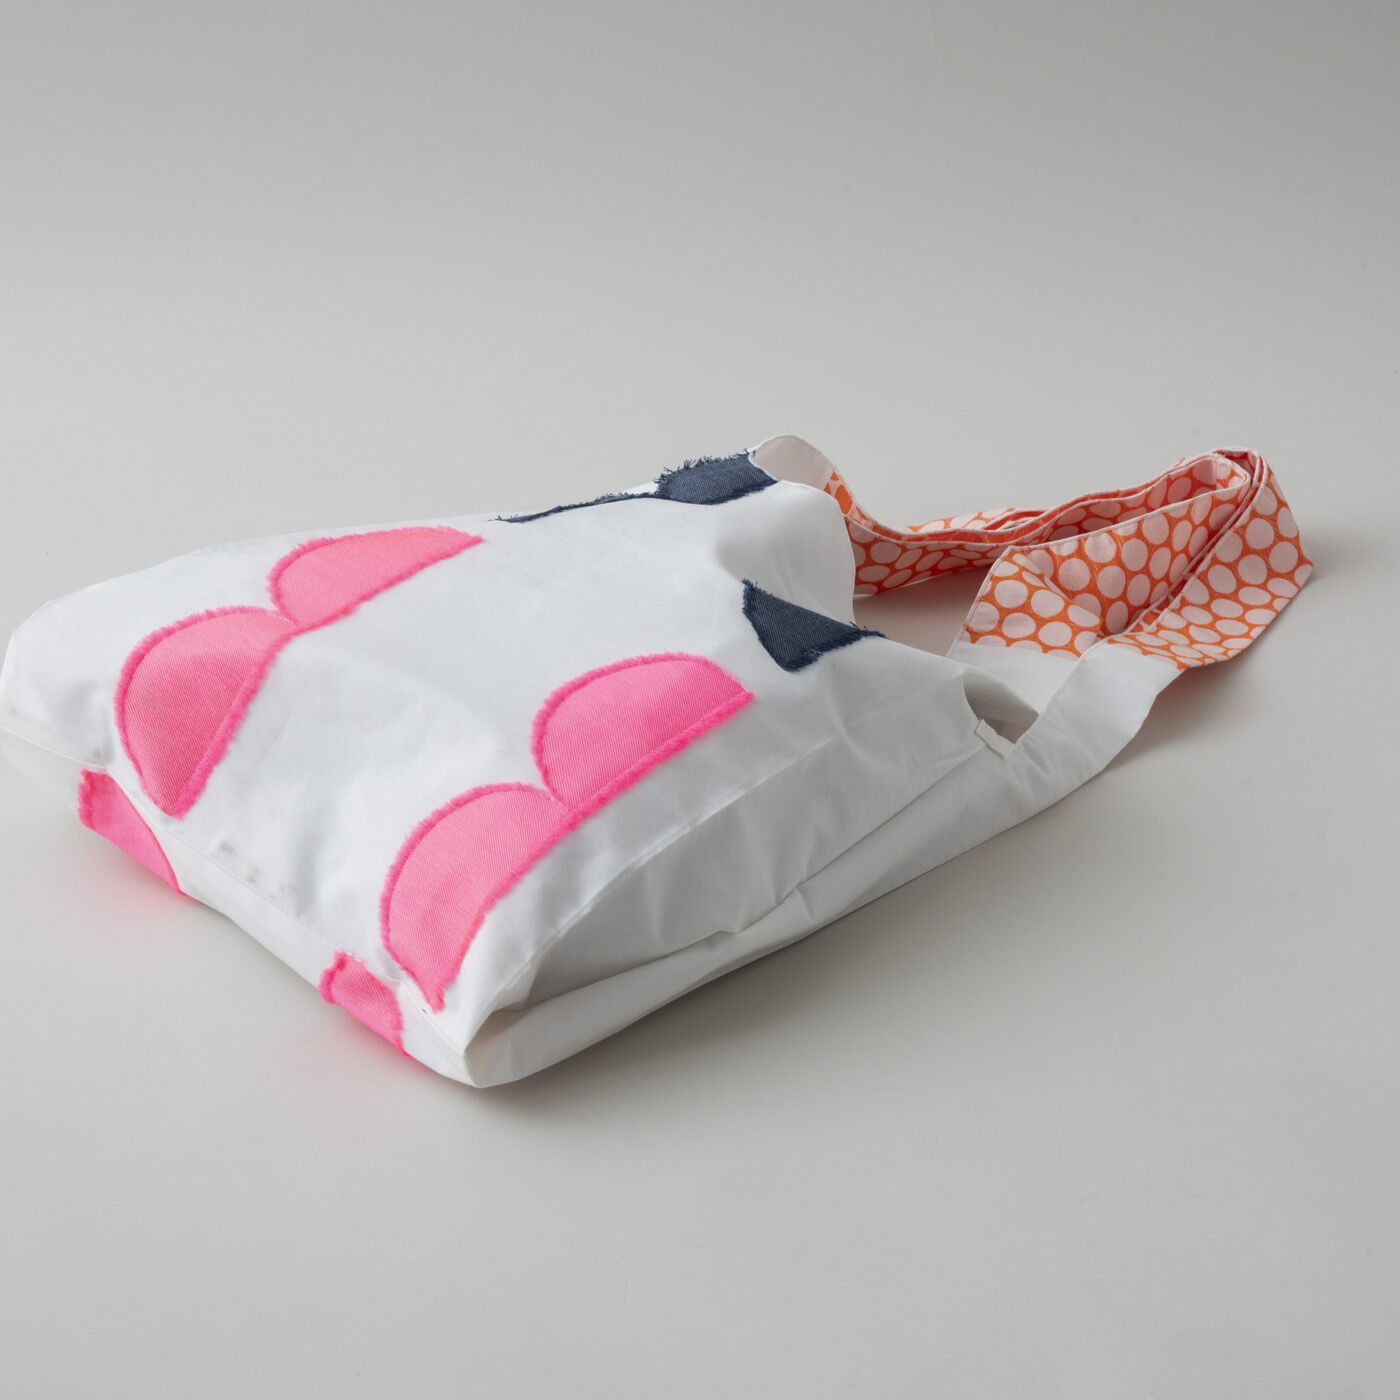 ＆Stories|テキスタイルデザイナーと作った　播州ジャカード織のドレスバッグ〈エン・ホワイト×ピンク〉|ショッピングバッグとしても充分使えるラージサイズ。